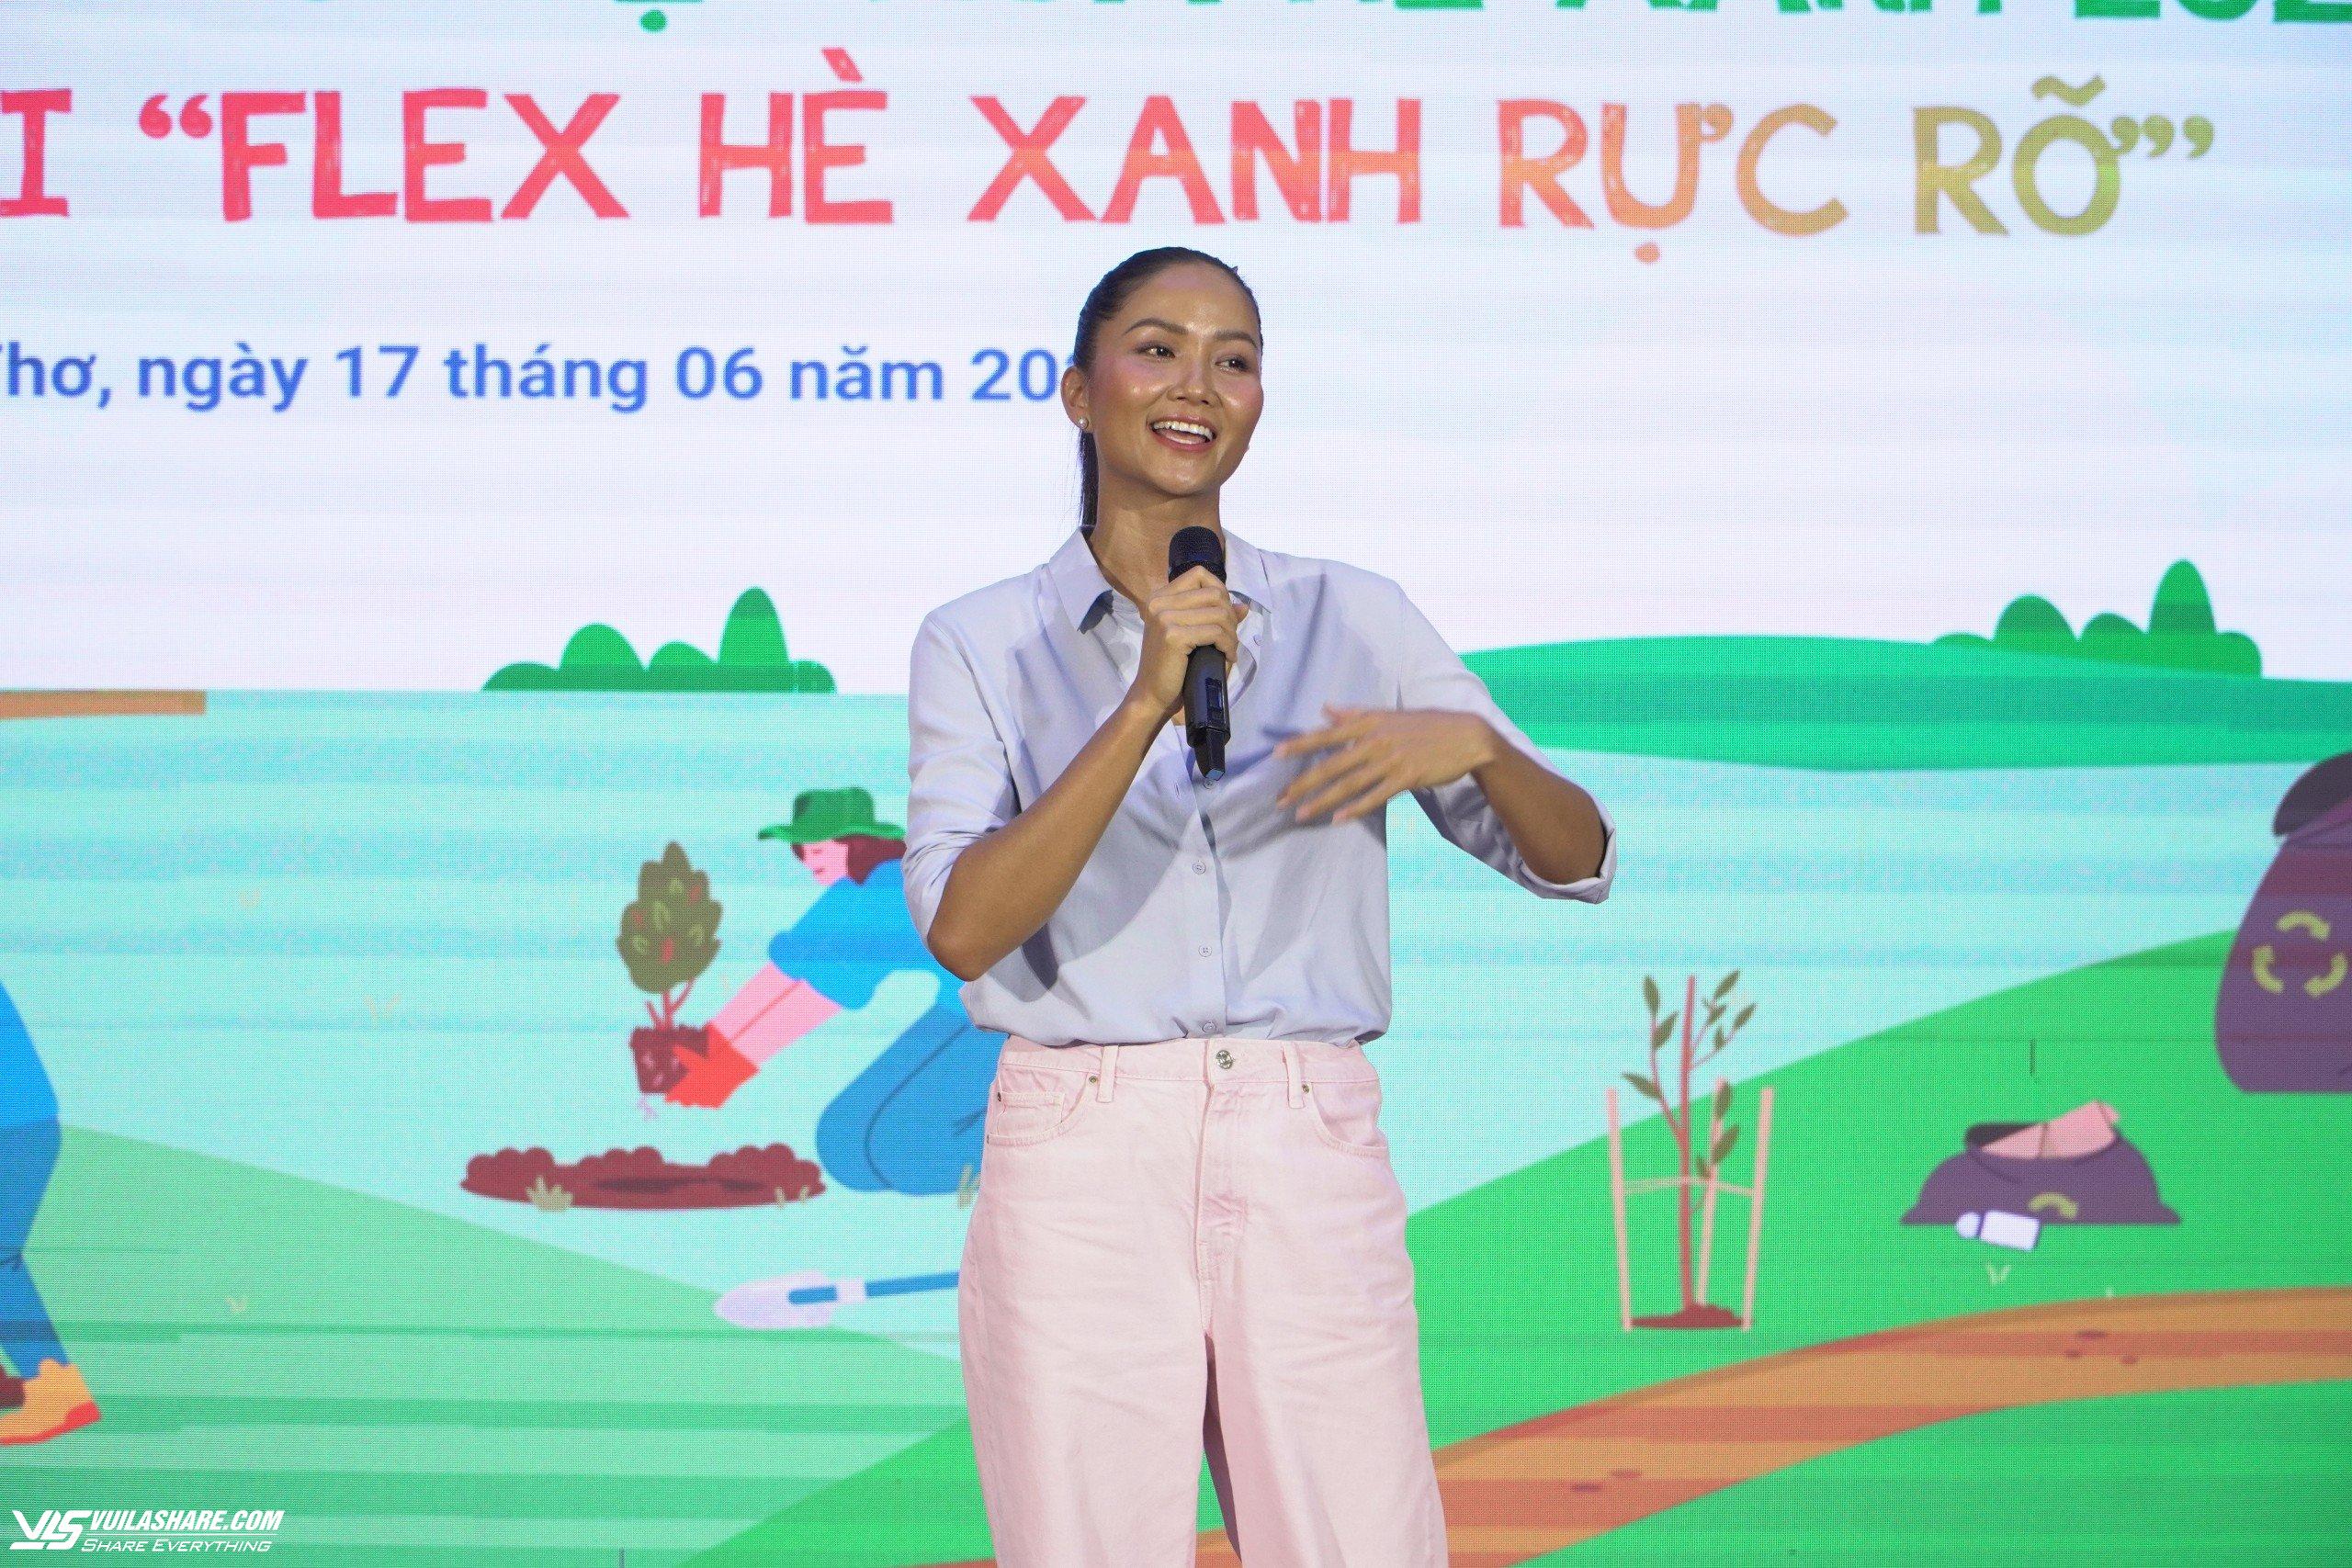 Hoa hậu H’Hen Niê làm đại sứ cuộc thi sáng tạo clip ‘Flex hè xanh rực rỡ’- Ảnh 2.